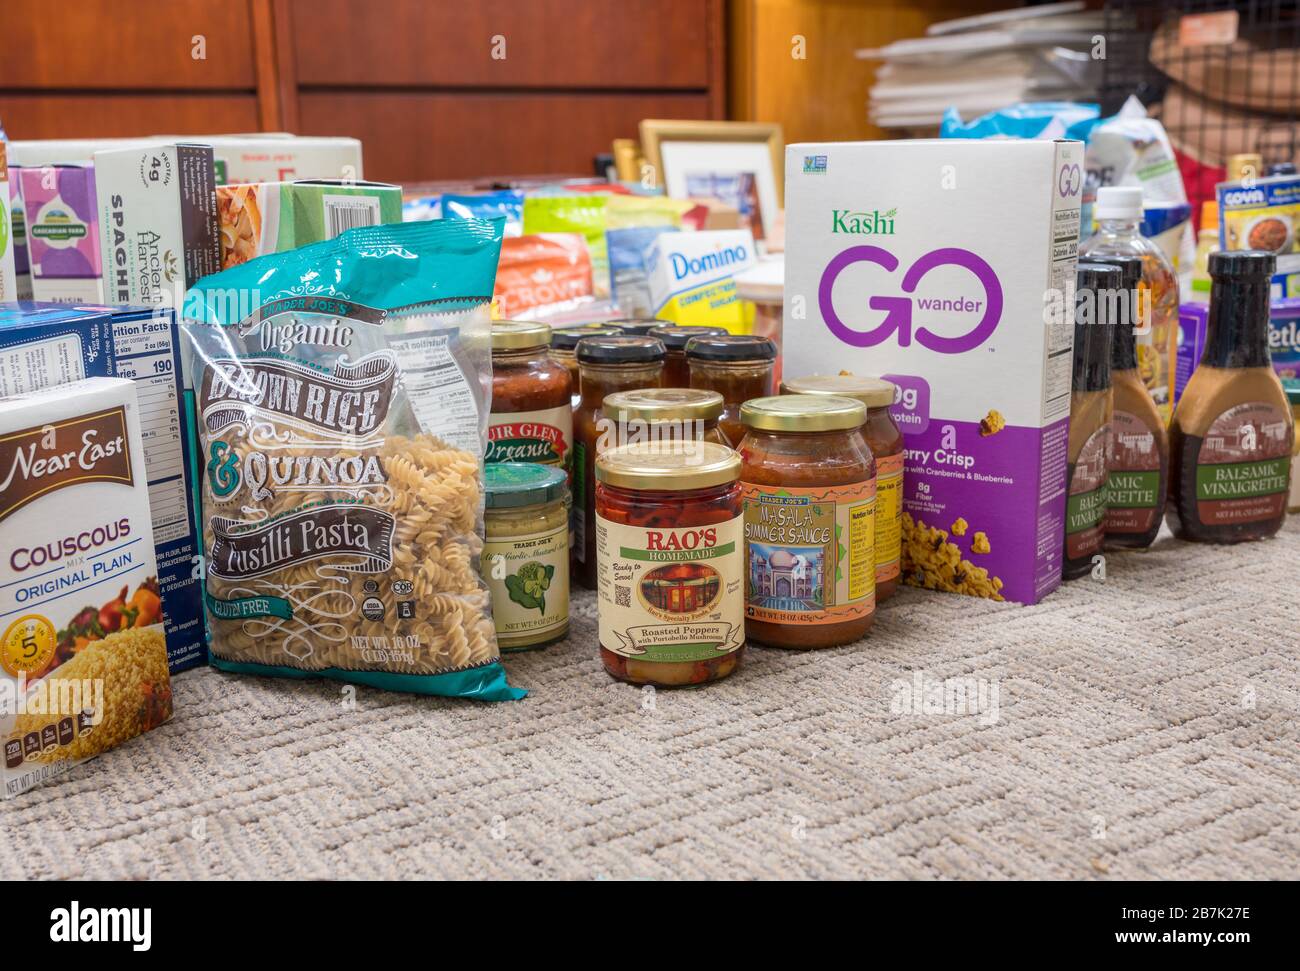 Morgantown, WV - 16. März 2020: Auswahl von Lebensmitteln für den Heimatladen während der Quarantäne aufgrund der Coronavirus Epidemie Stockfoto